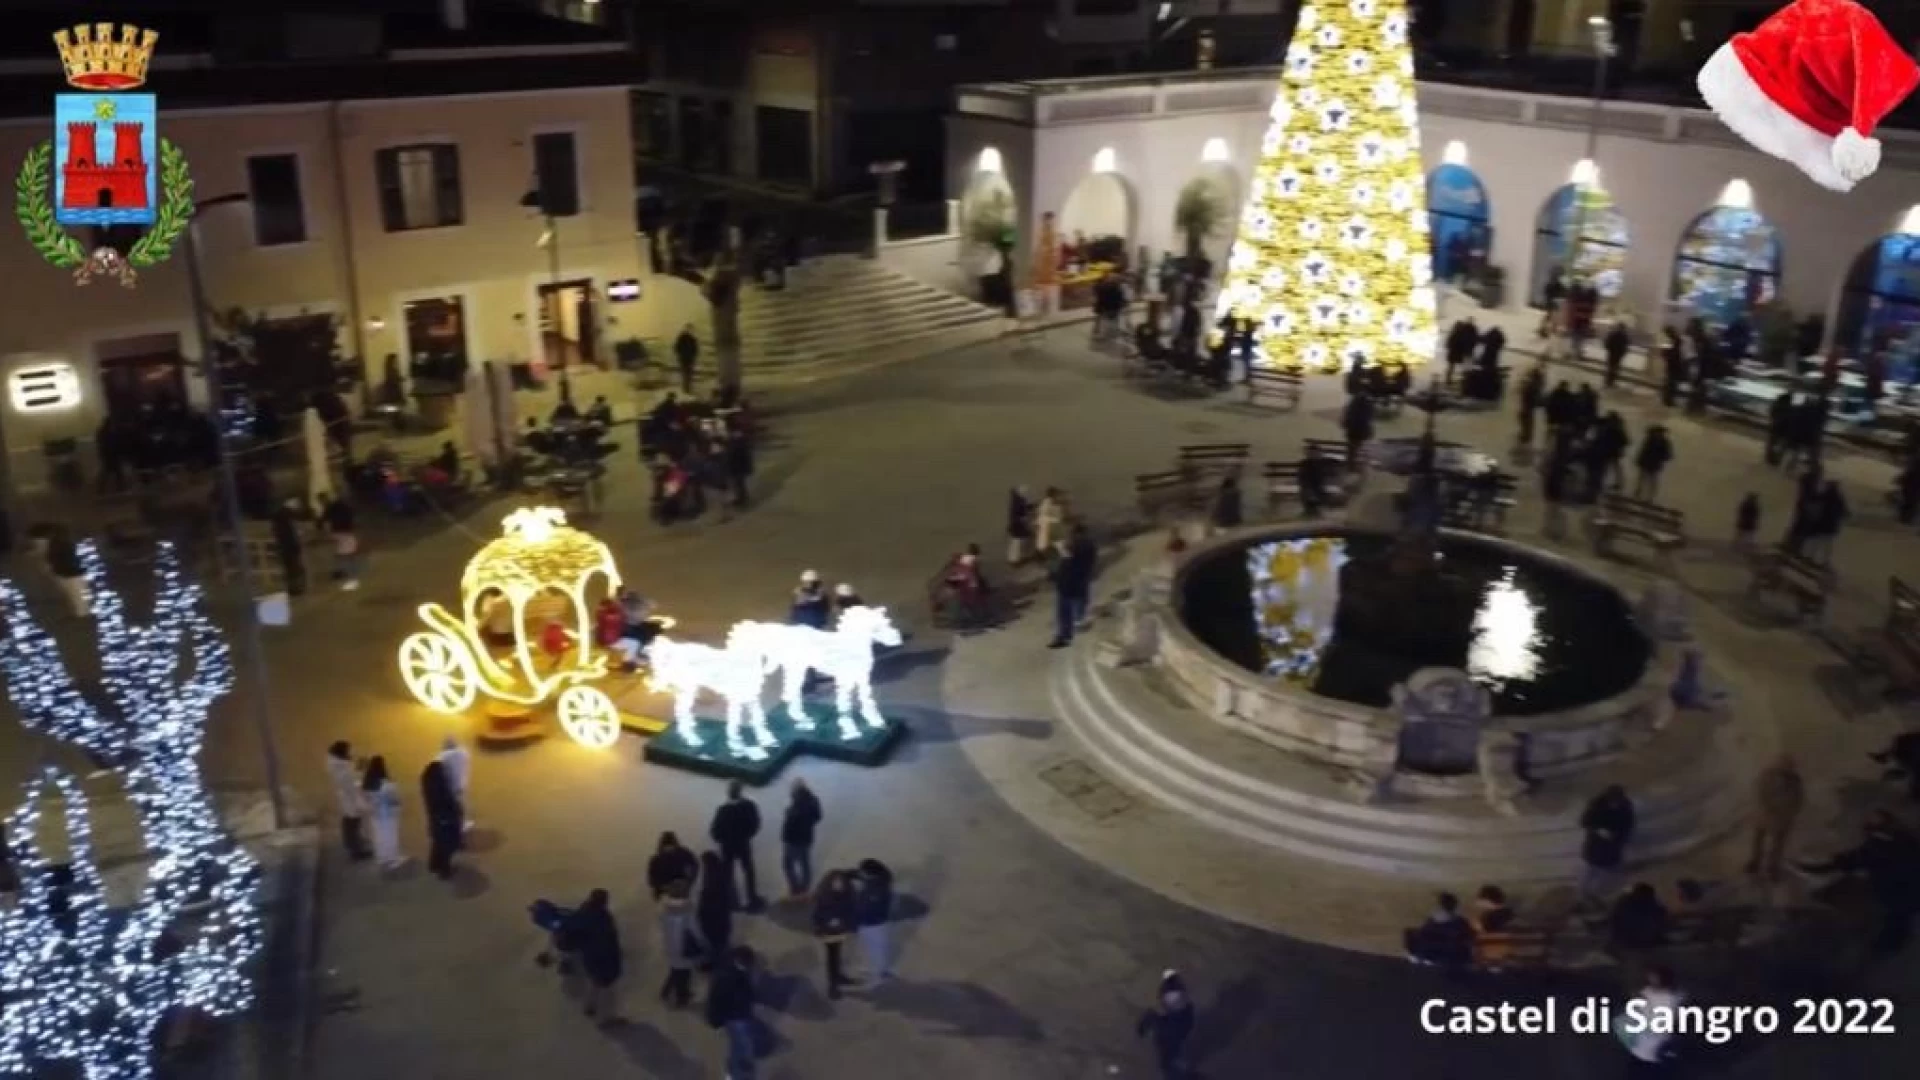 Castel Di Sangro: Capodanno in piazza Plebiscito. Grande festa prevista il 31 dicembre. Caruso: “L’evento renderà piacevole la vacanza ai turisti”.